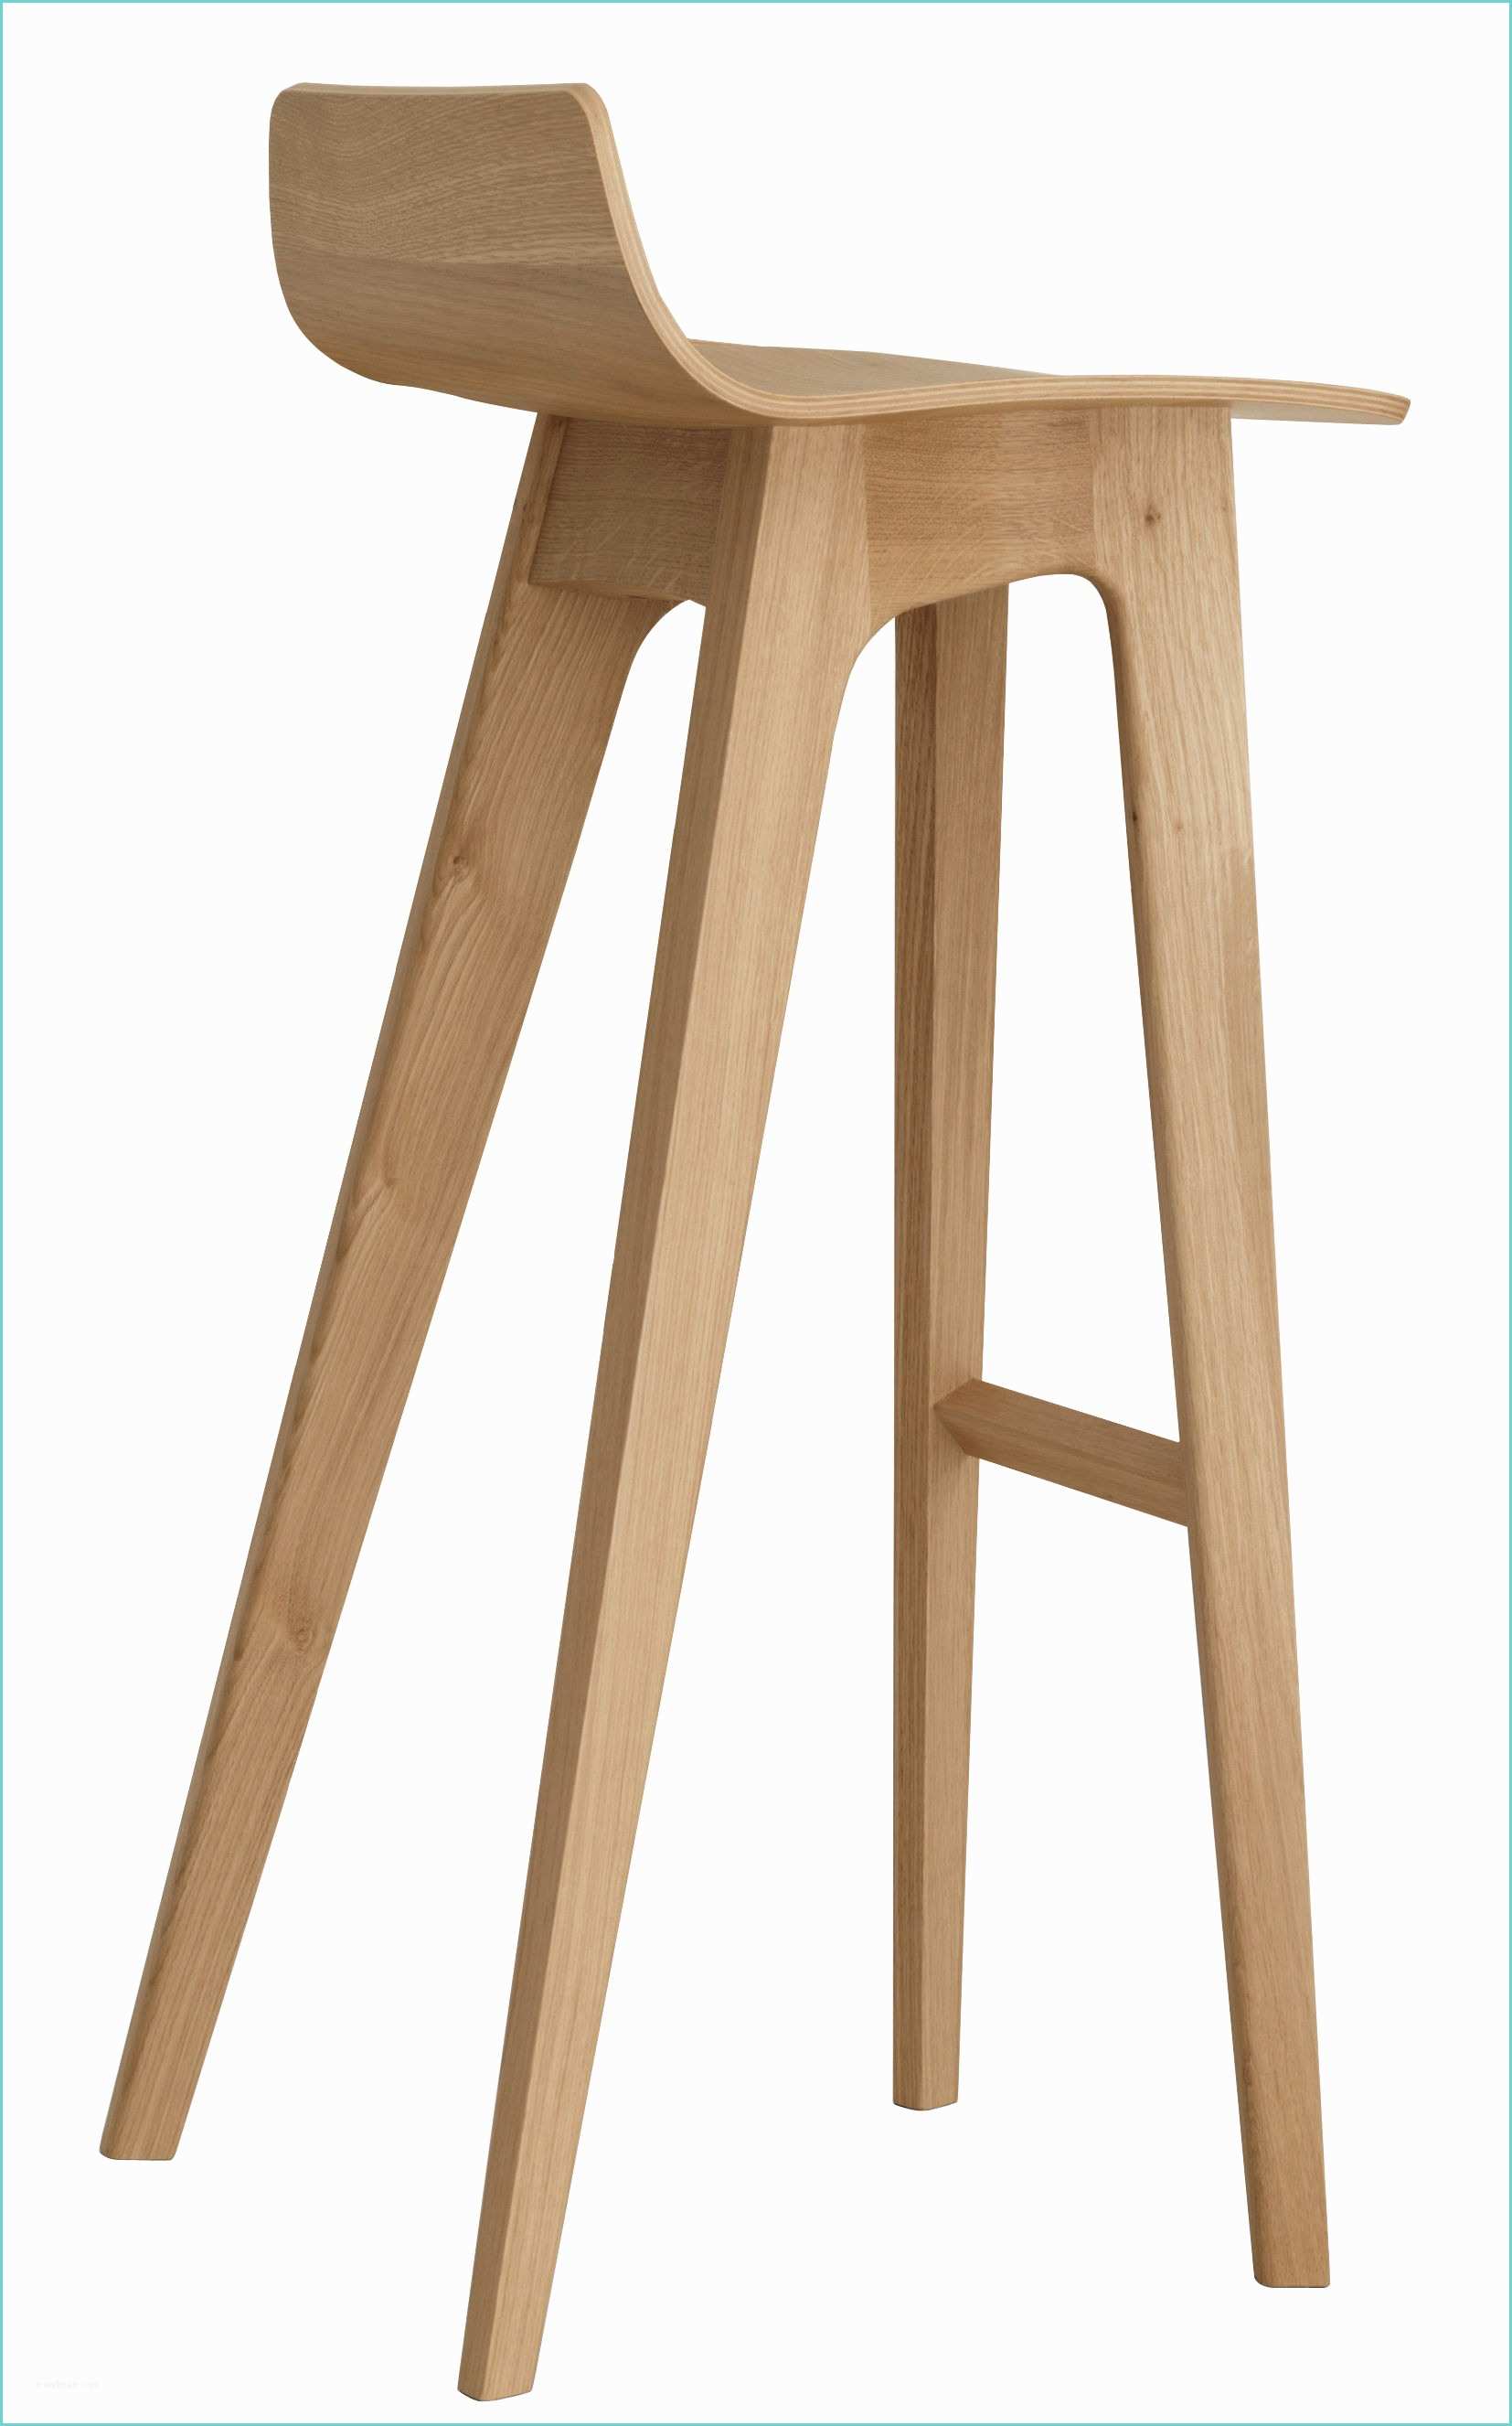 prod tabouret de bar morph bois h 80 cm zeitraum refmorph stool 80 oak